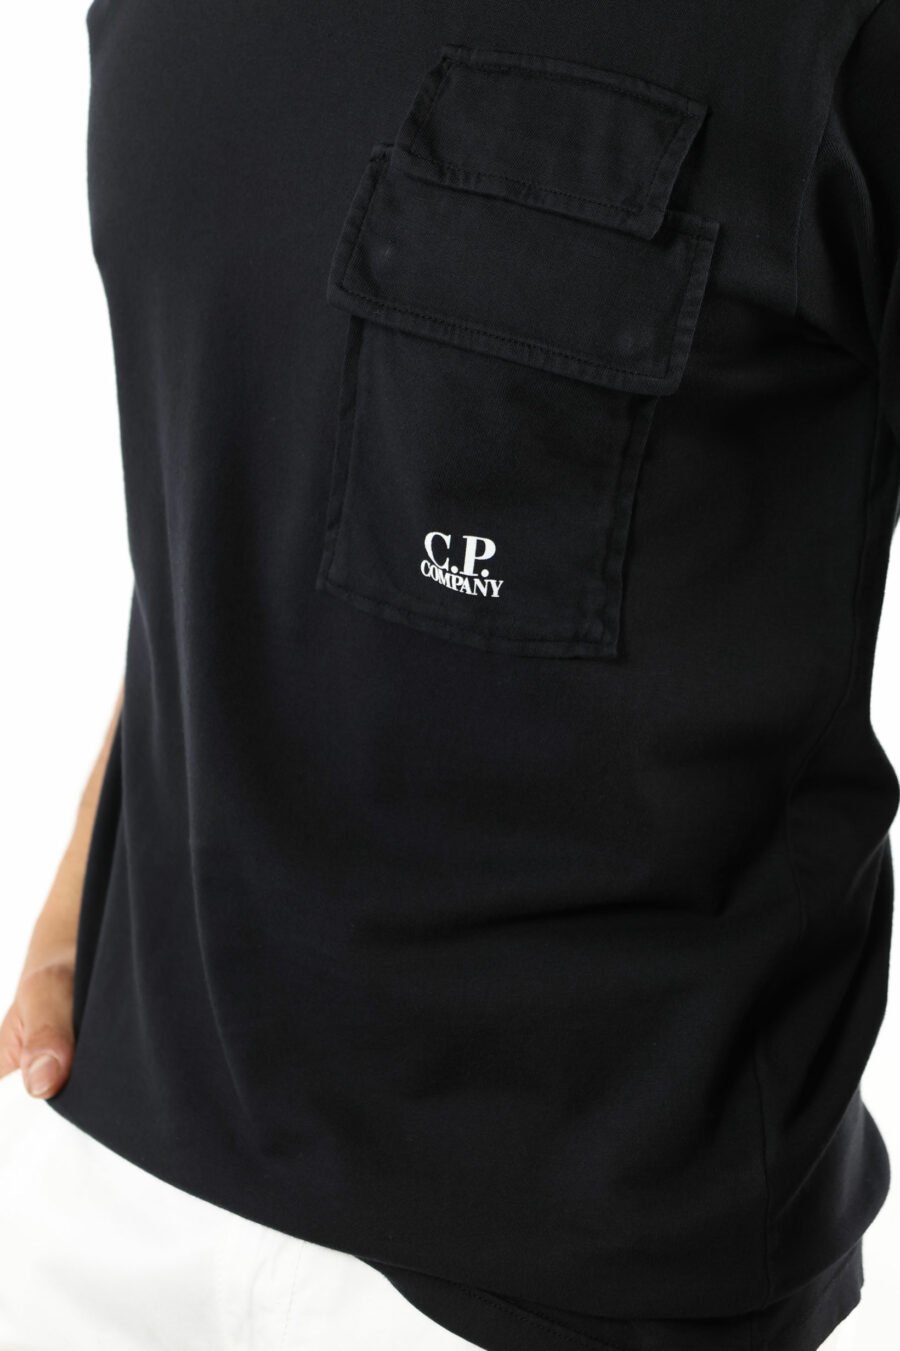 Camiseta negra con bolsillos y minilogo "cp" - 111331